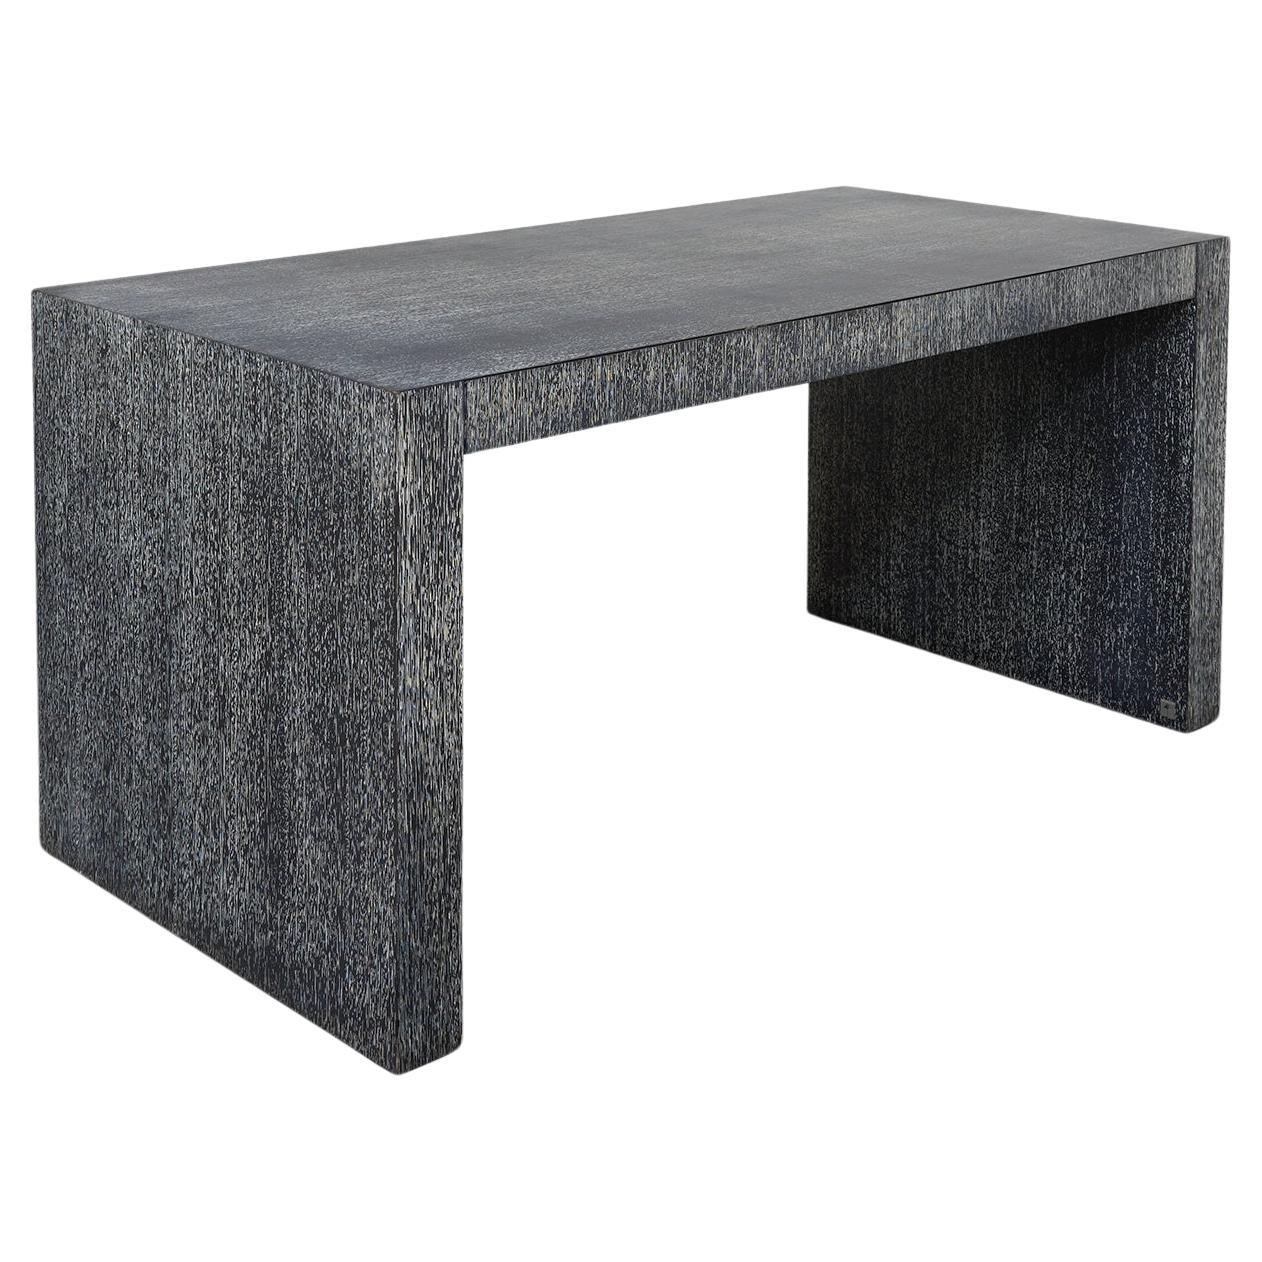 Dieser elegante und beeindruckende Schreibtisch wurde von Giorgio Armani im Geiste von Jean Michel Frank entworfen, dem ikonischen französischen Designer, der auch heute noch als Meister der minimalistischen Eleganz gilt.

Der Schreibtisch ist aus